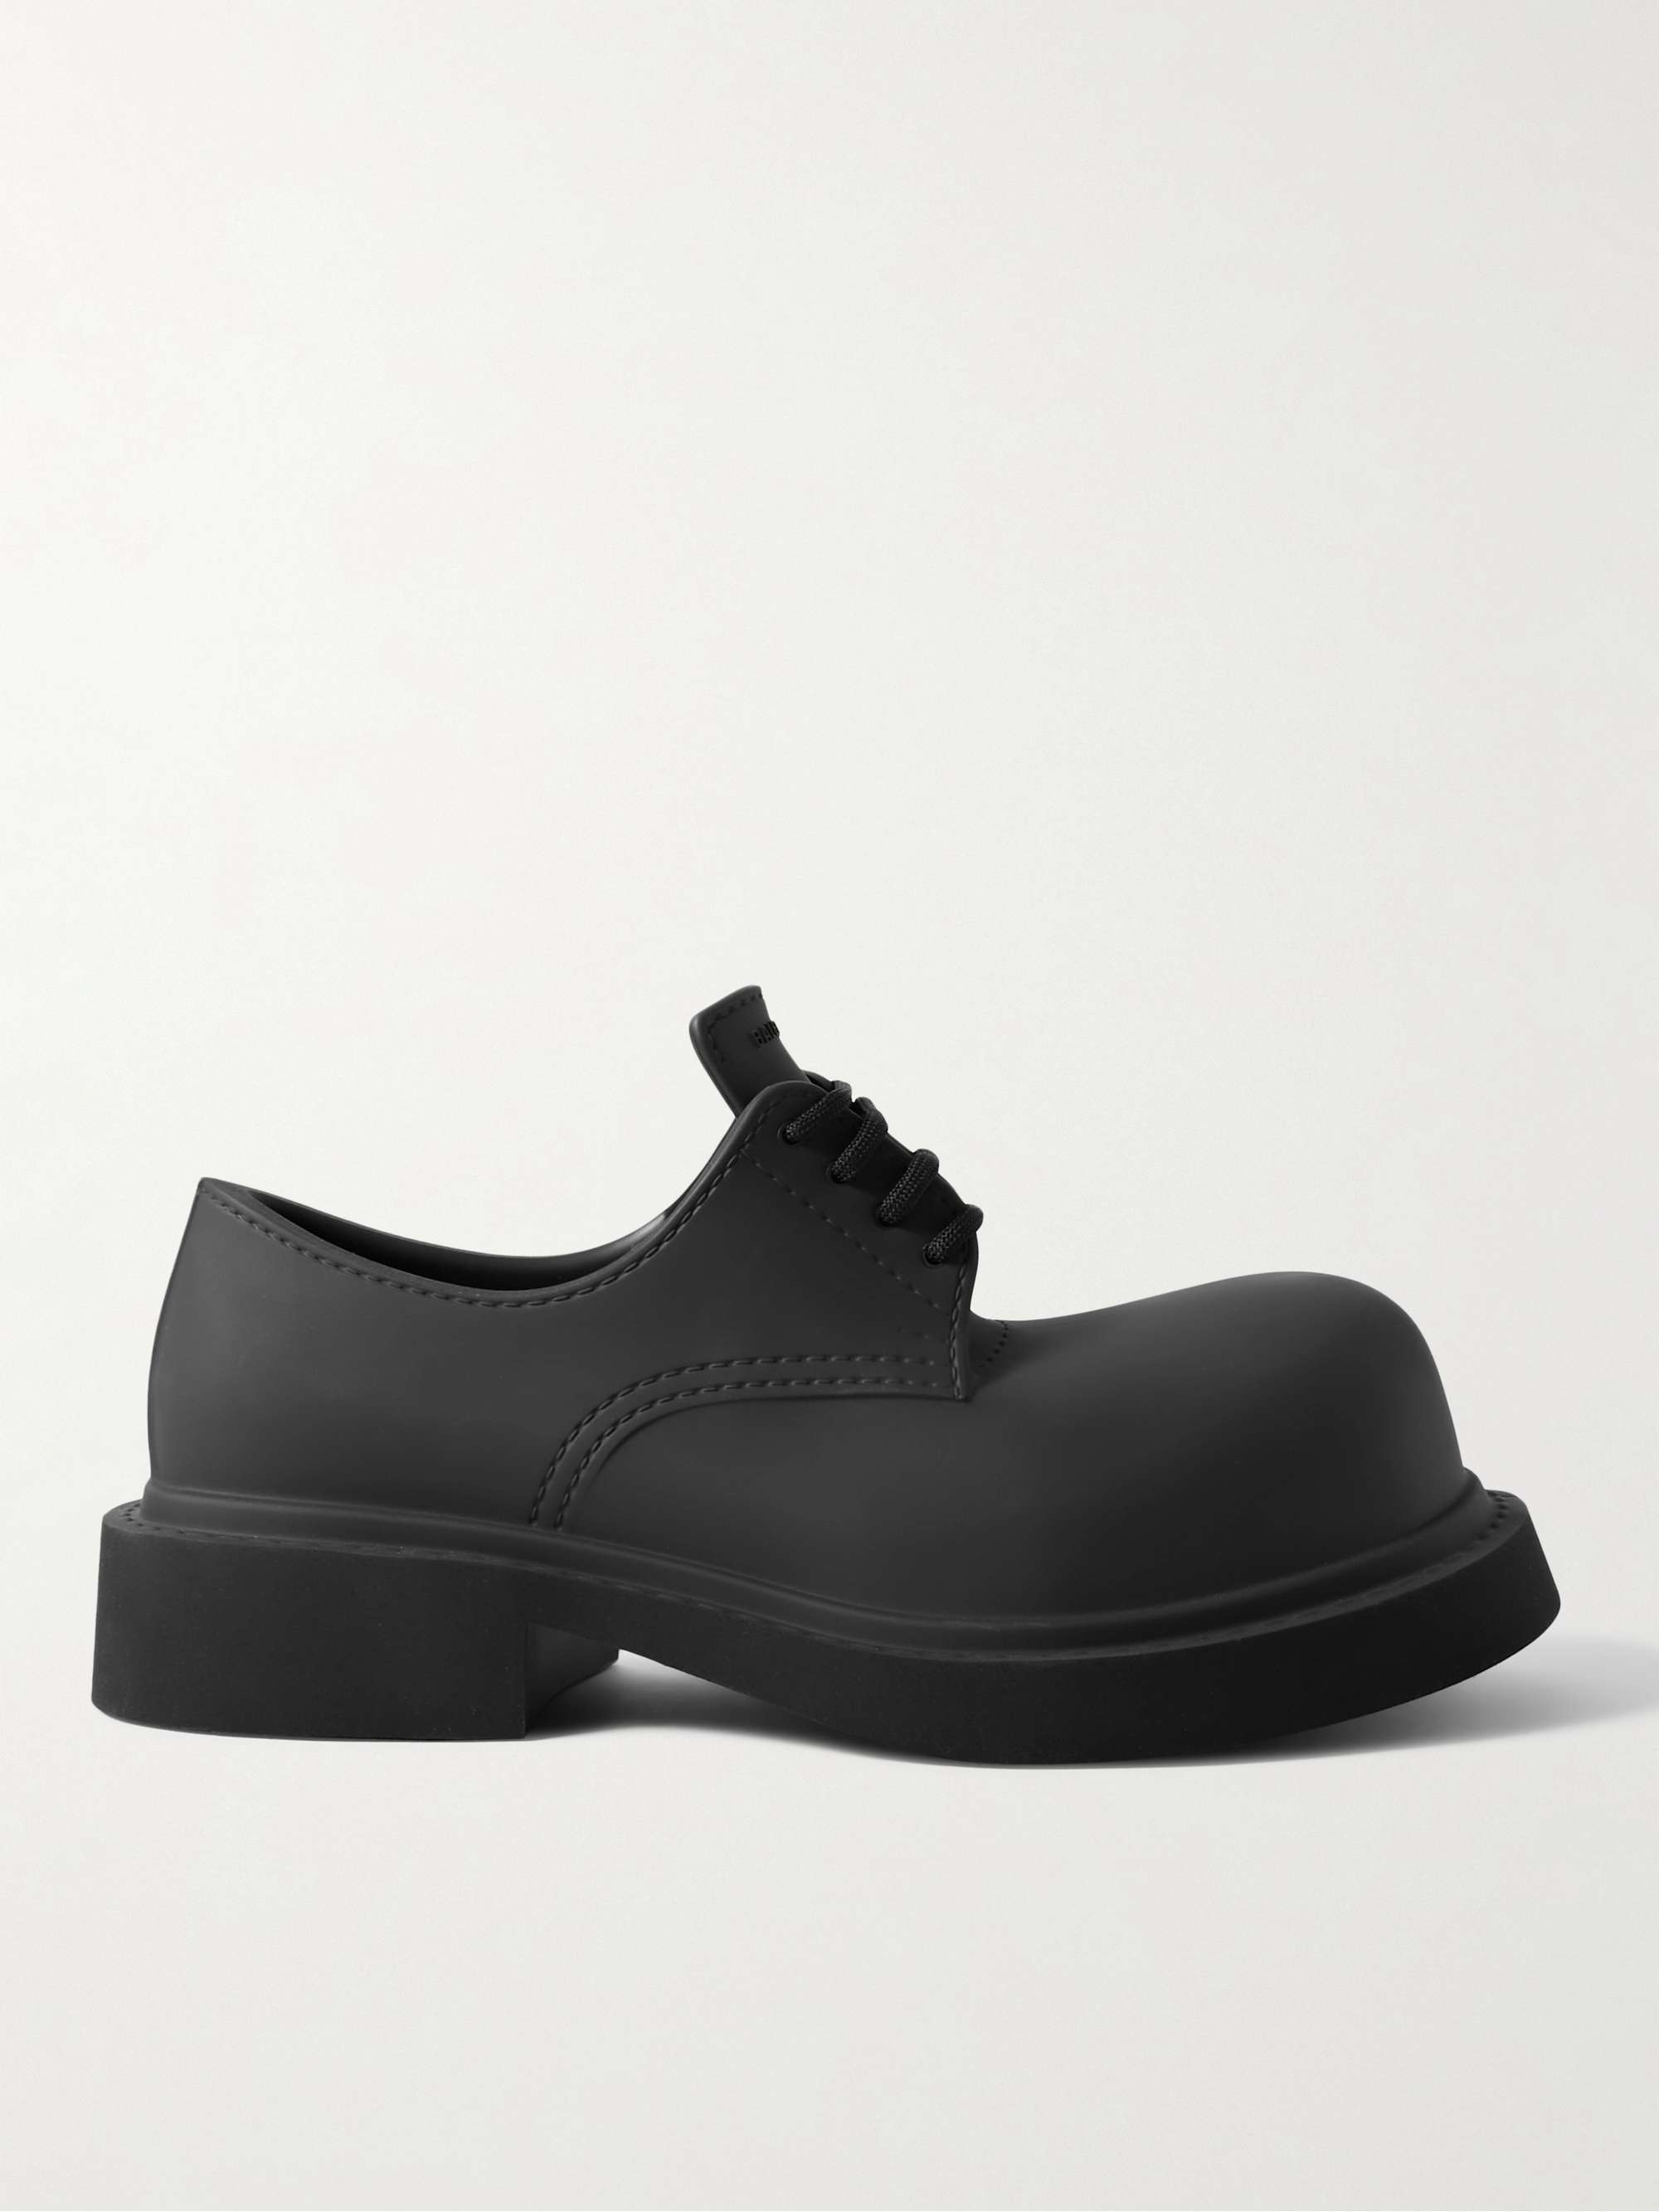 Black Rubber Derby Shoes | BALENCIAGA | MR PORTER